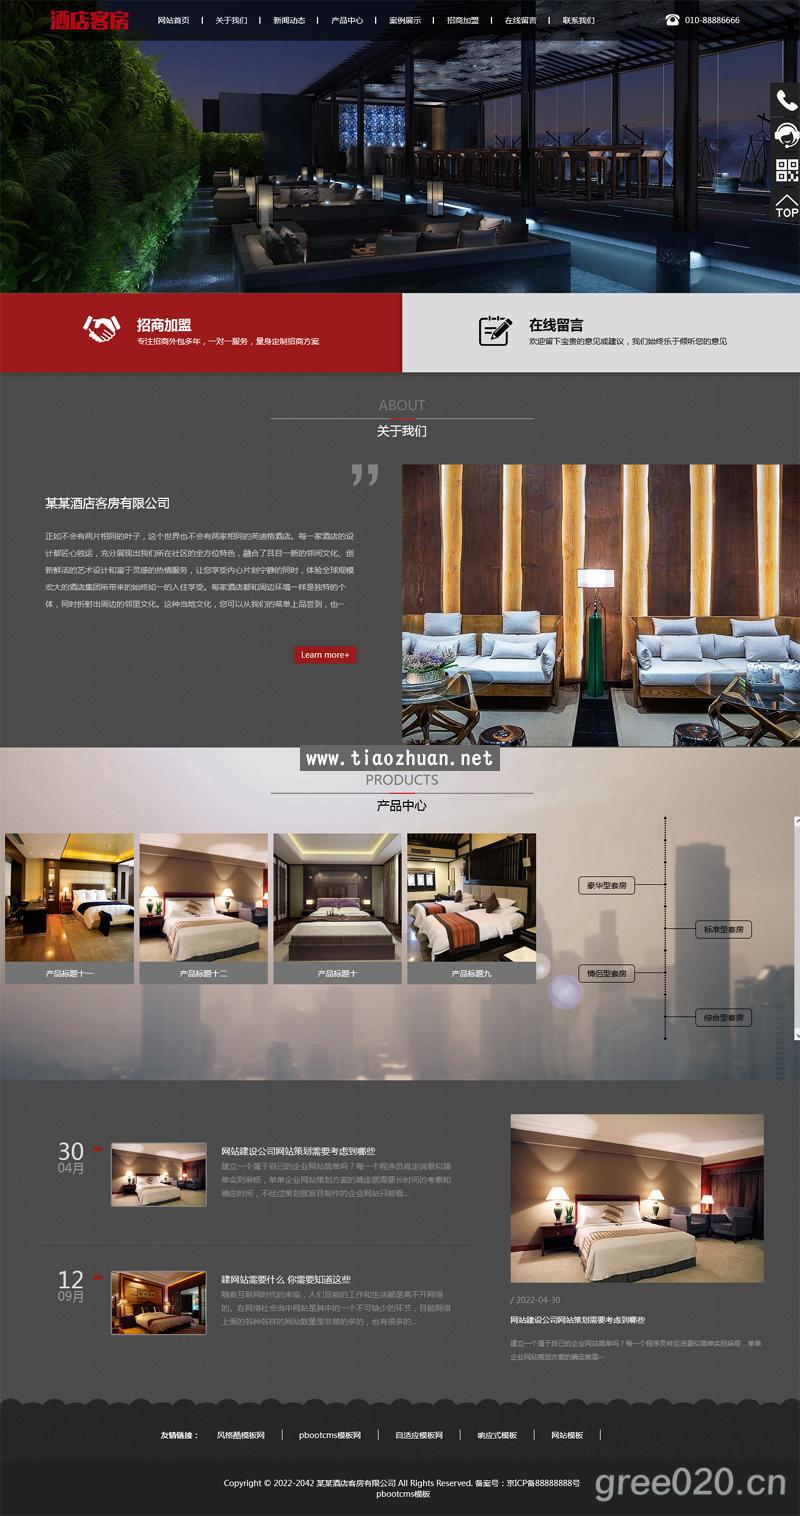 酒店客房类网站模板,高端酒店公寓套房出租网站源码下载